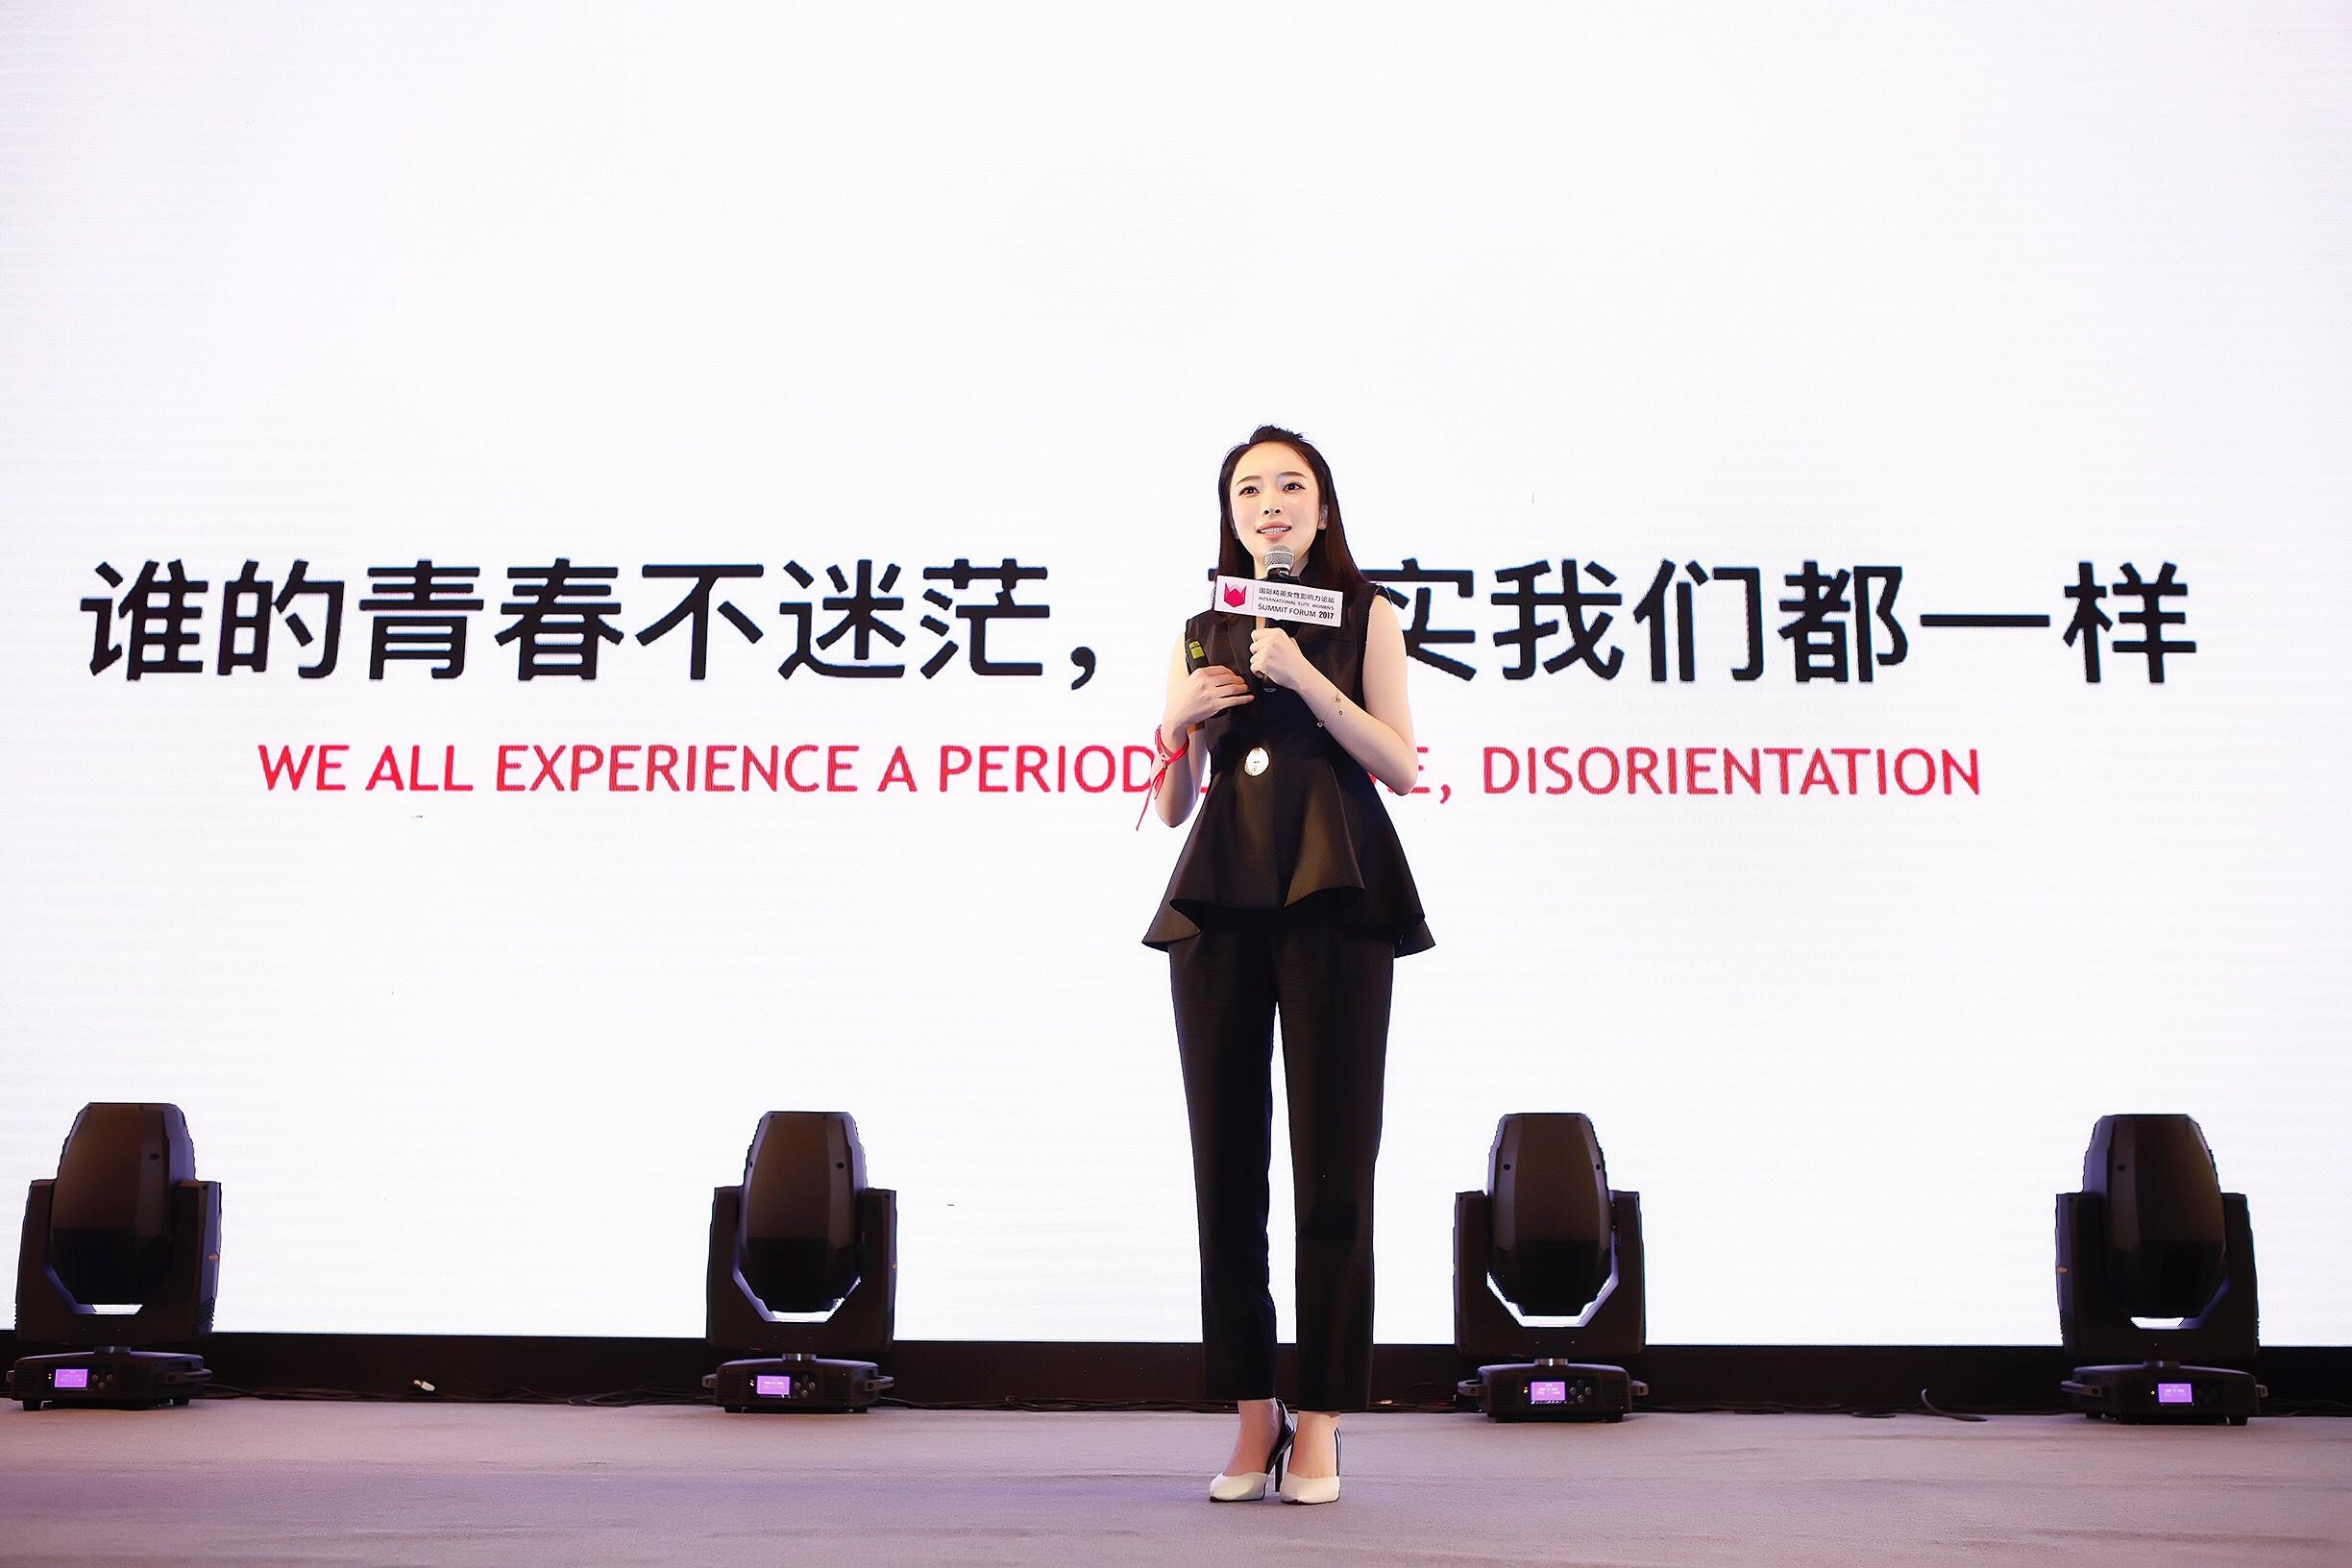 四位中国女性上榜“2020福布斯亚洲商界影响力女性榜单”，最年轻者年仅29岁